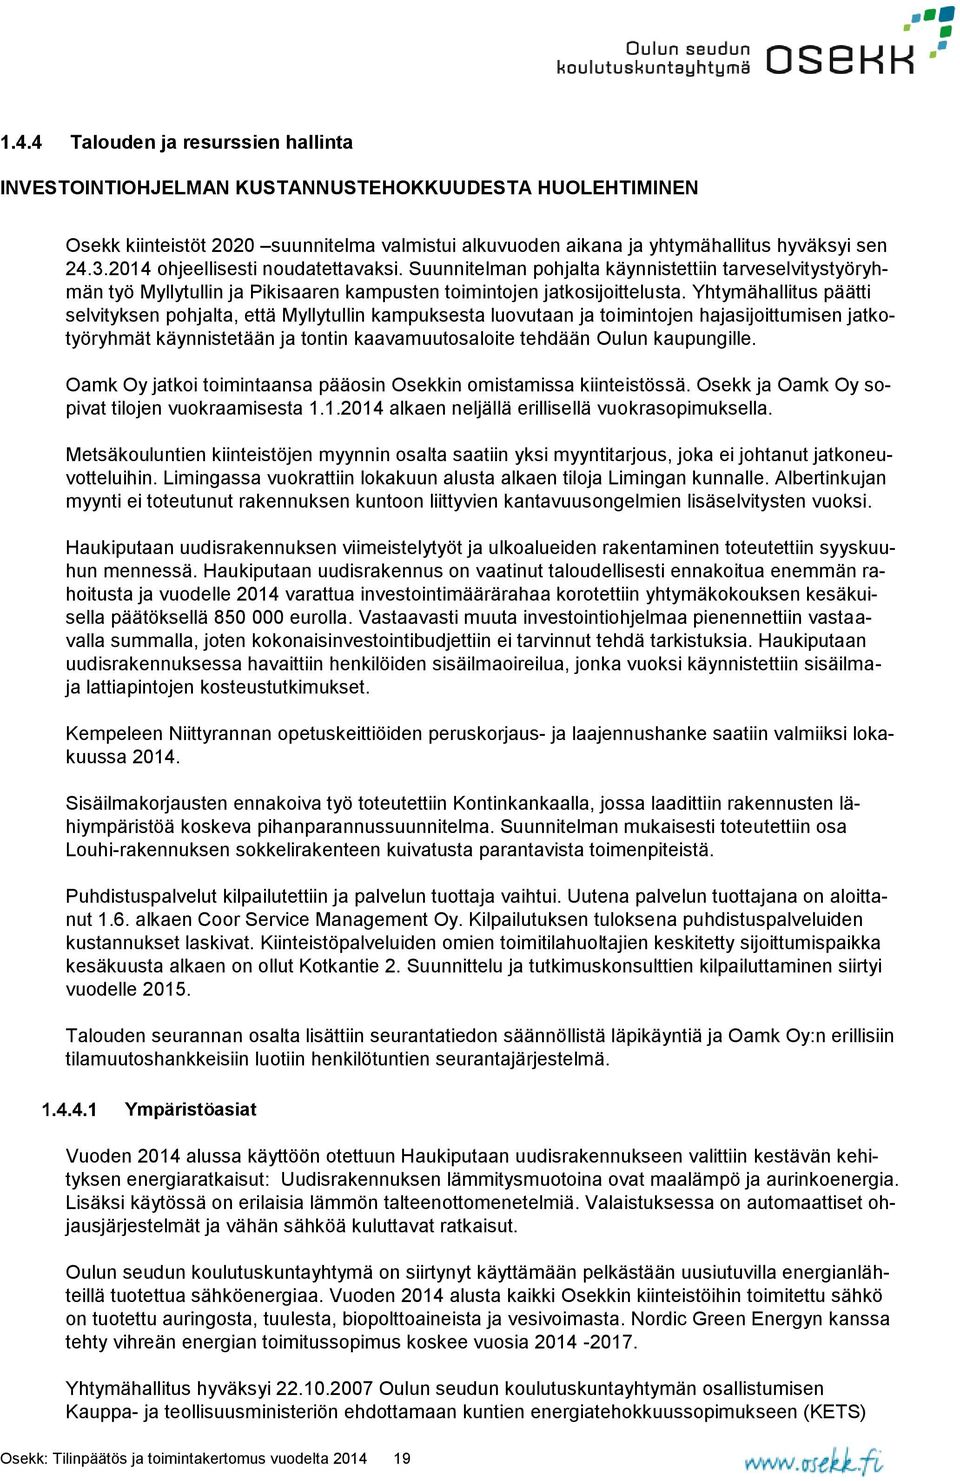 Yhtymähallitus päätti selvityksen pohjalta, että Myllytullin kampuksesta luovutaan ja toimintojen hajasijoittumisen jatkotyöryhmät käynnistetään ja tontin kaavamuutosaloite tehdään Oulun kaupungille.